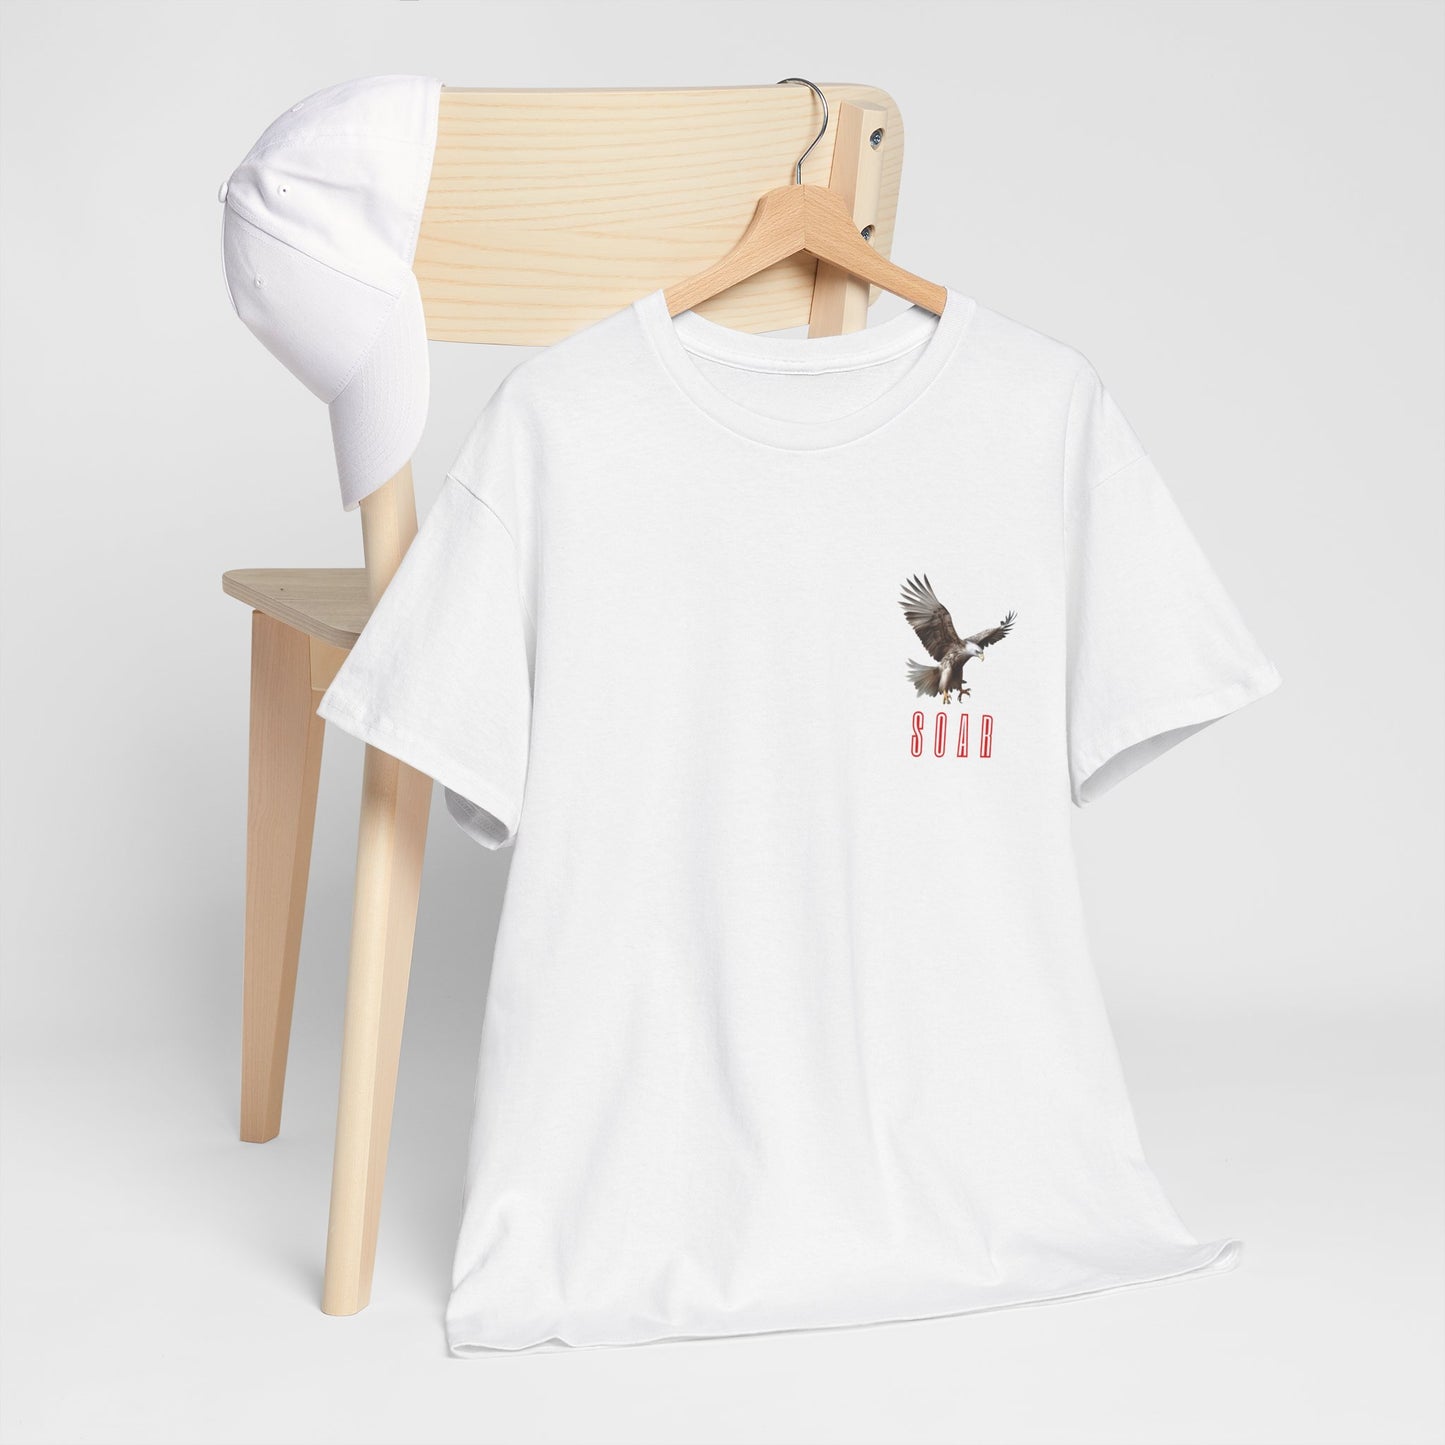 Unisex Heavy Cotton Graphic design ( SOAR) T-shirt